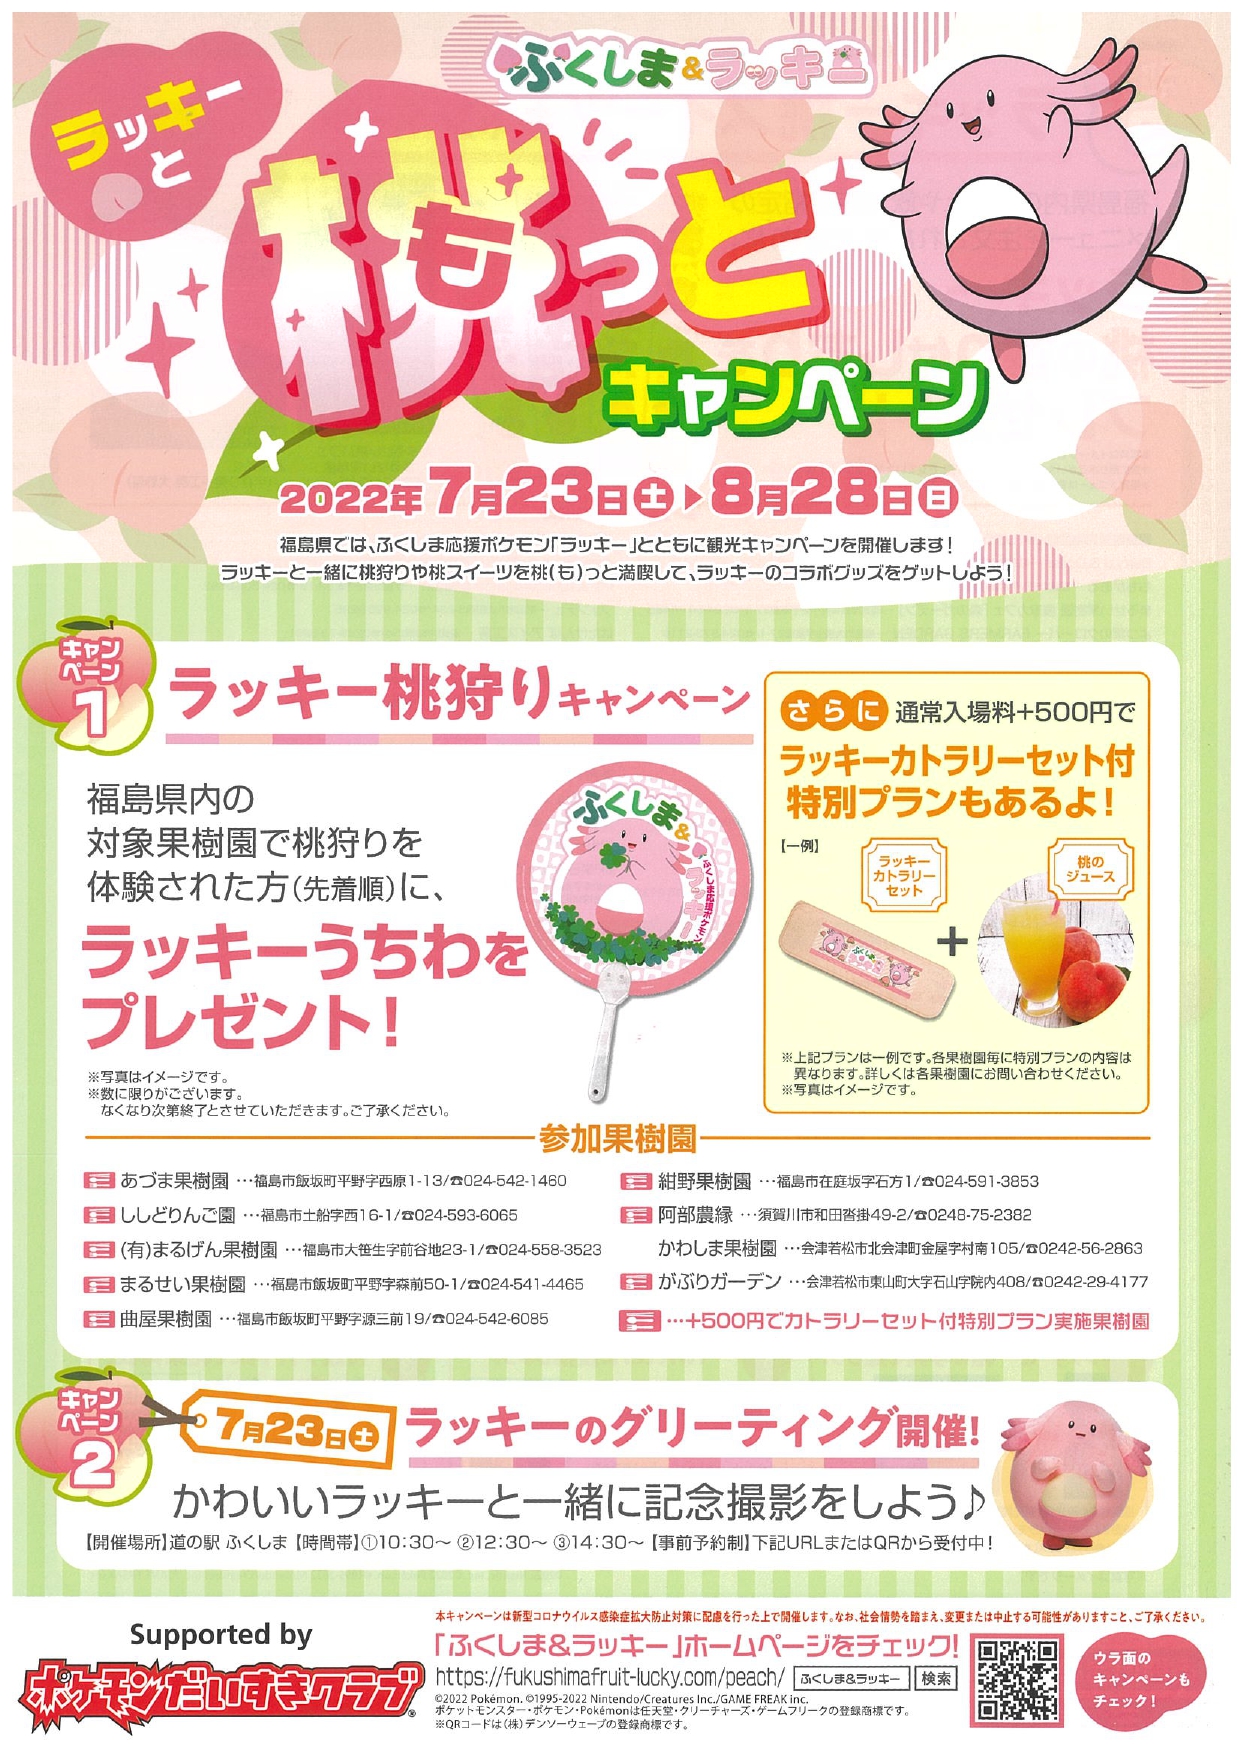 終了 ラッキーと桃 も っとキャンペーン イベント 福島市観光ノート